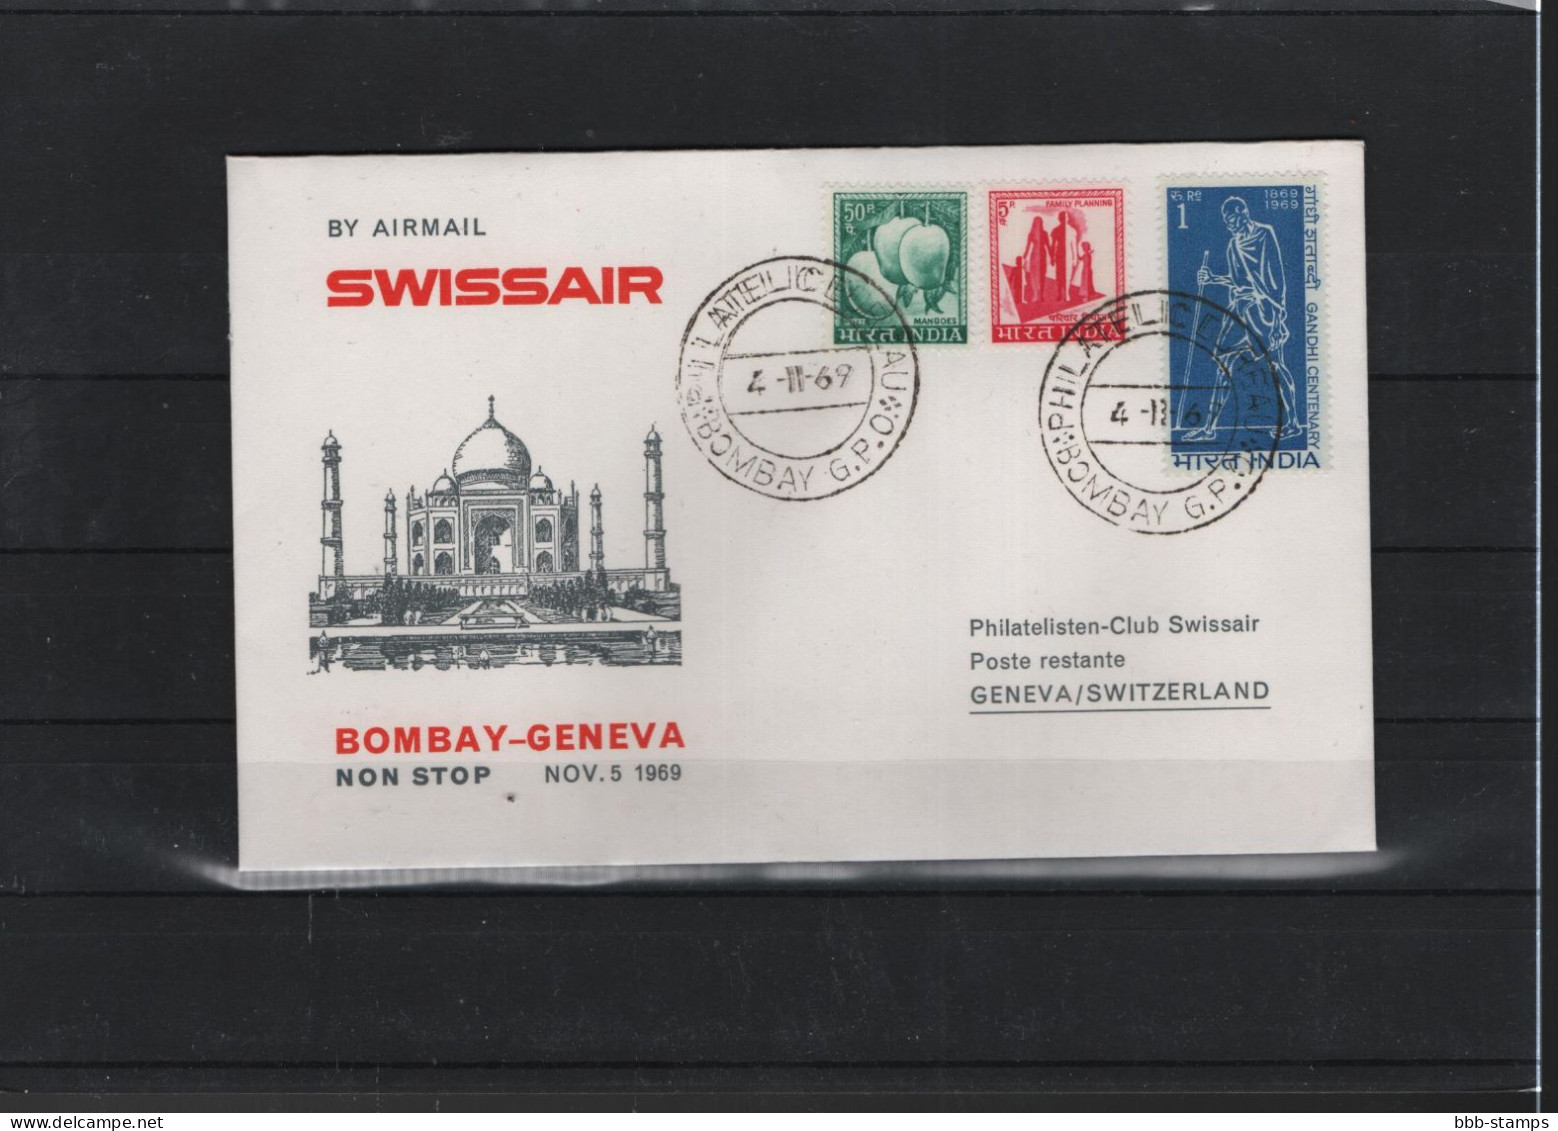 Schweiz Air Mail Swissair  FFC  2.11.1969 Genf - Bombay VV - Premiers Vols